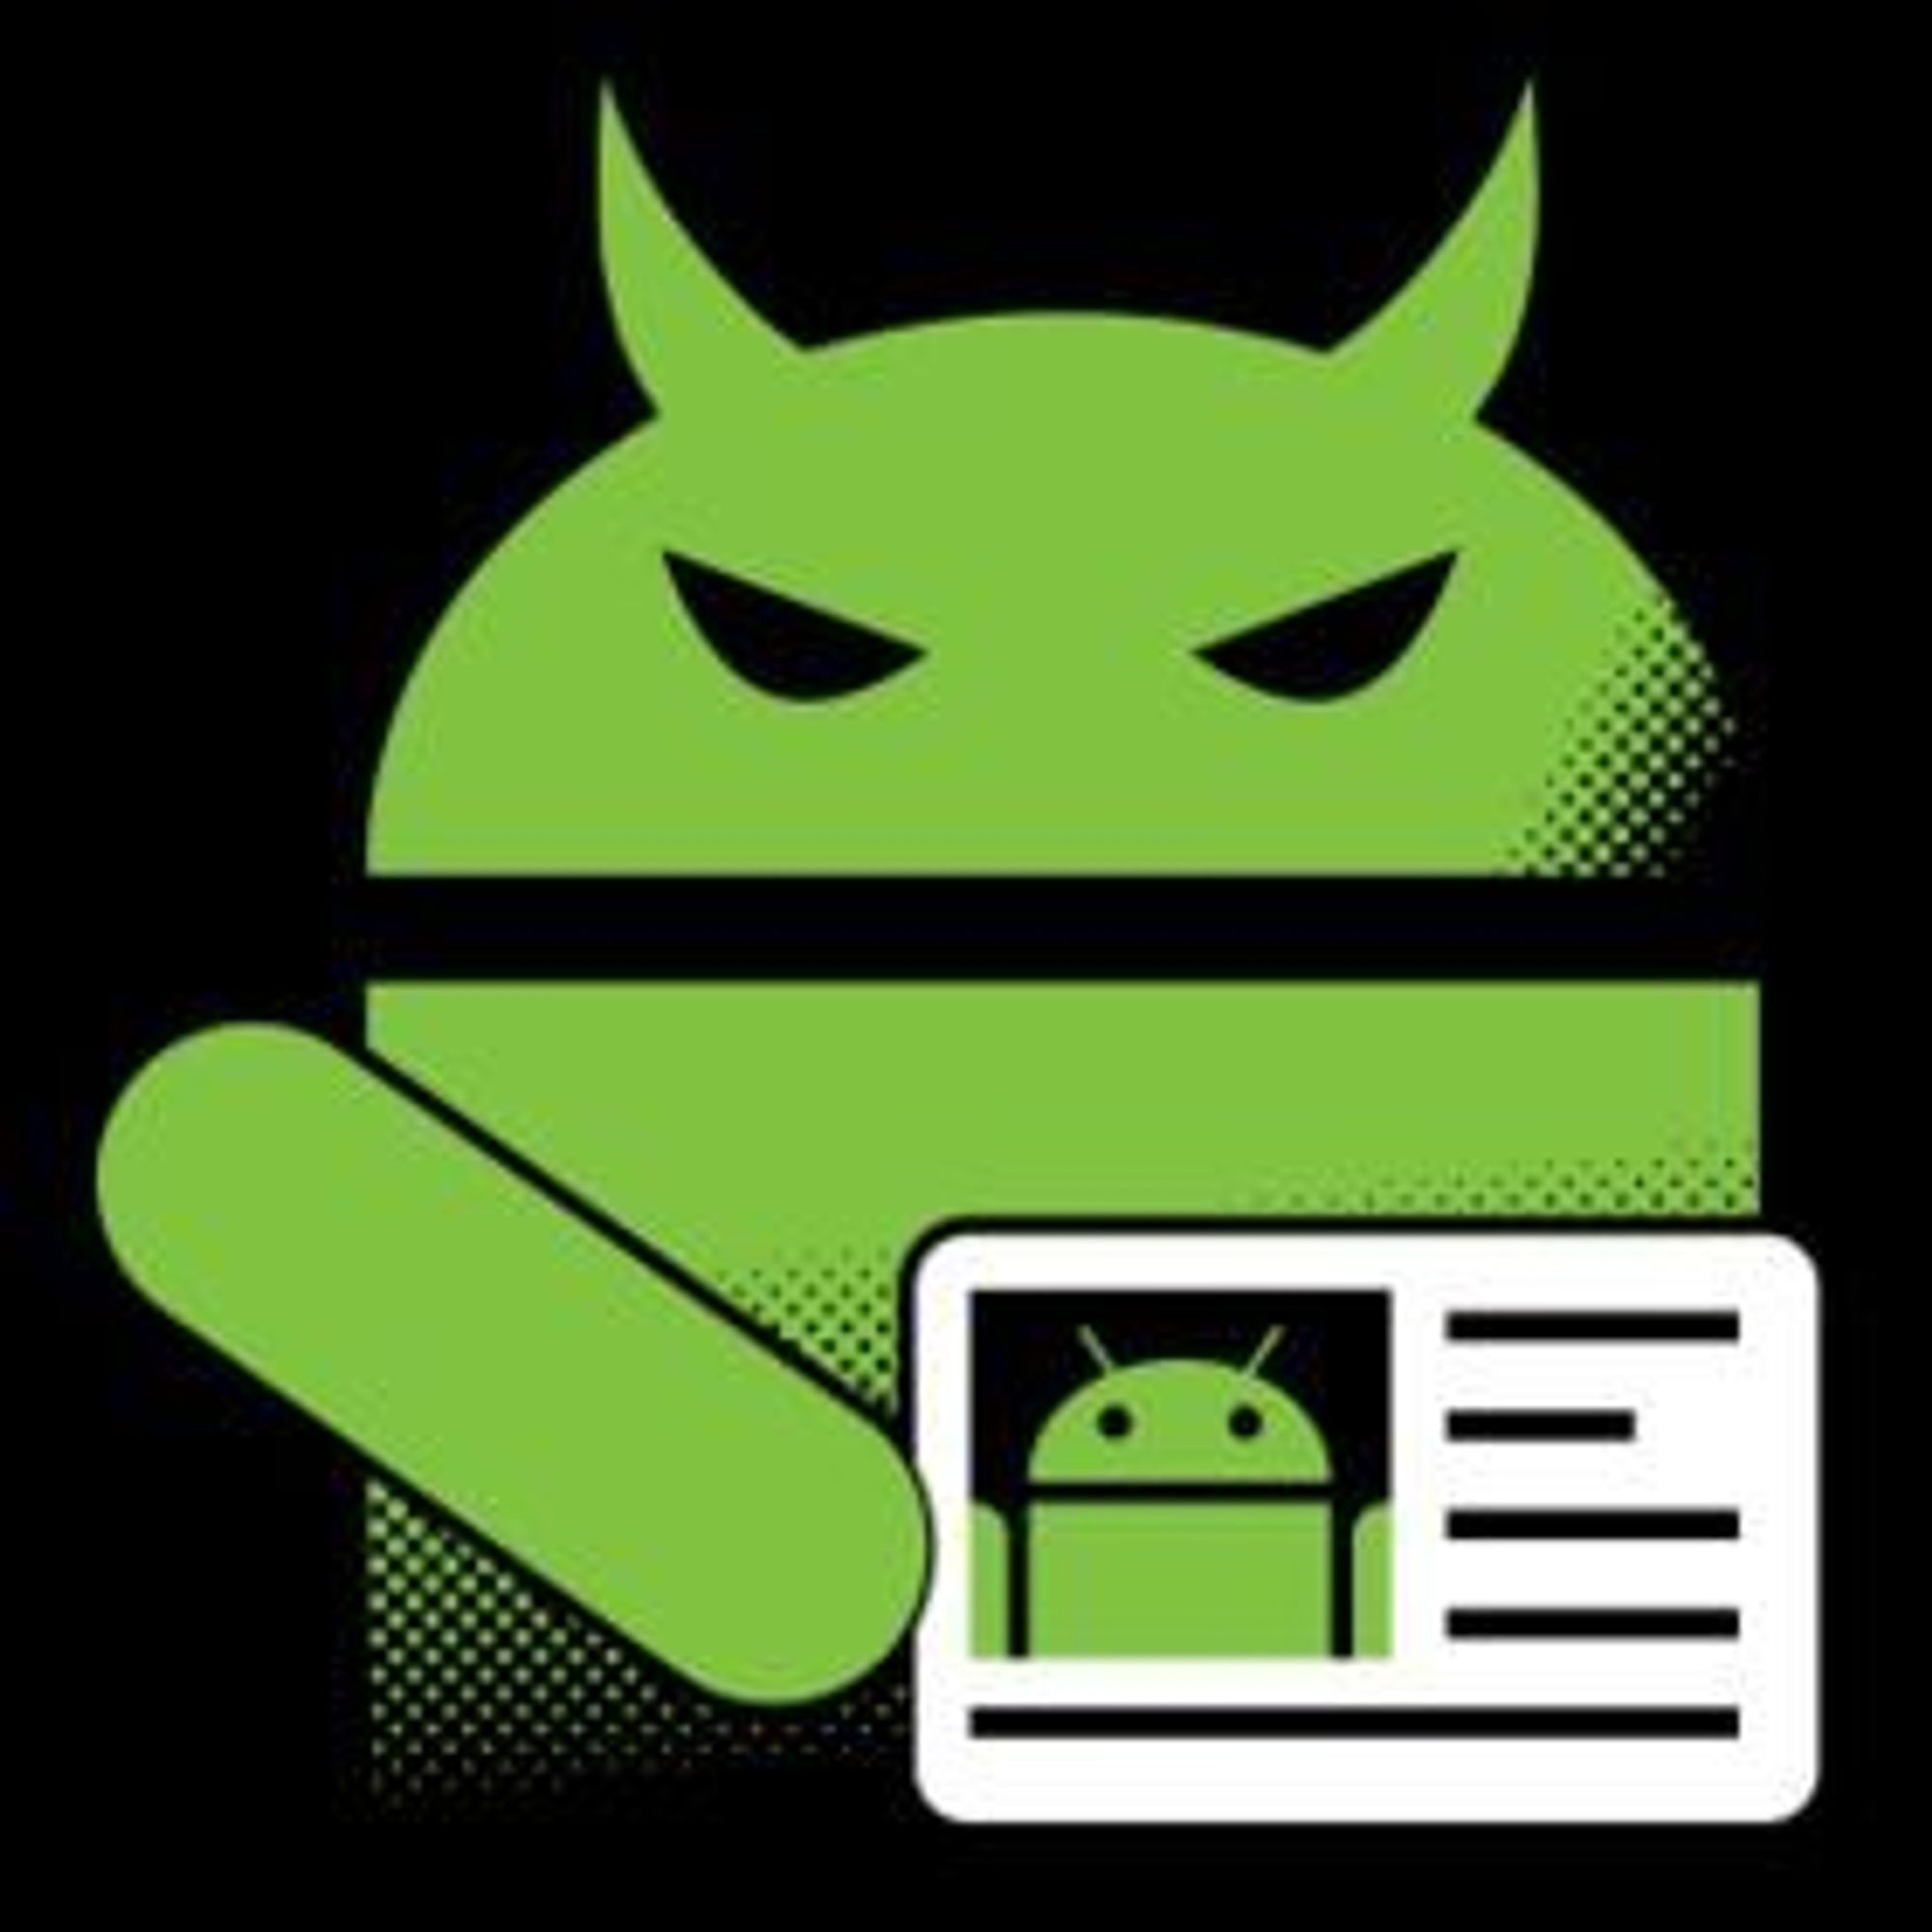 Sårbarheten gjør det mulig for Android-applikasjoner å bruke falsk ID.